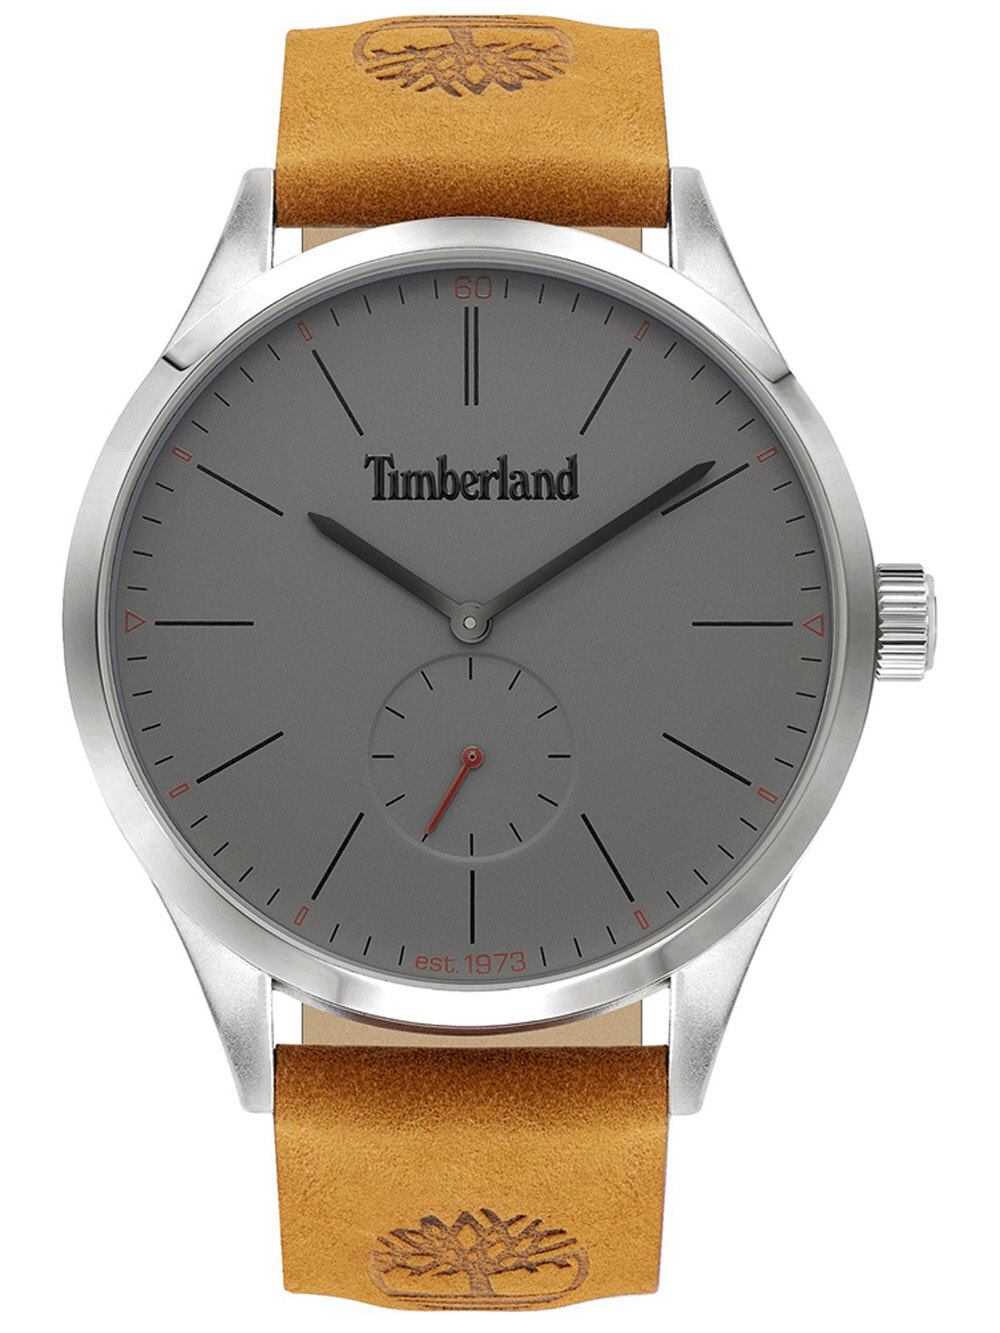 Мужские наручные часы с коричневым кожаным ремешком Timberland TBL16012JYS.13 Lamprey mens 45mm 5ATM